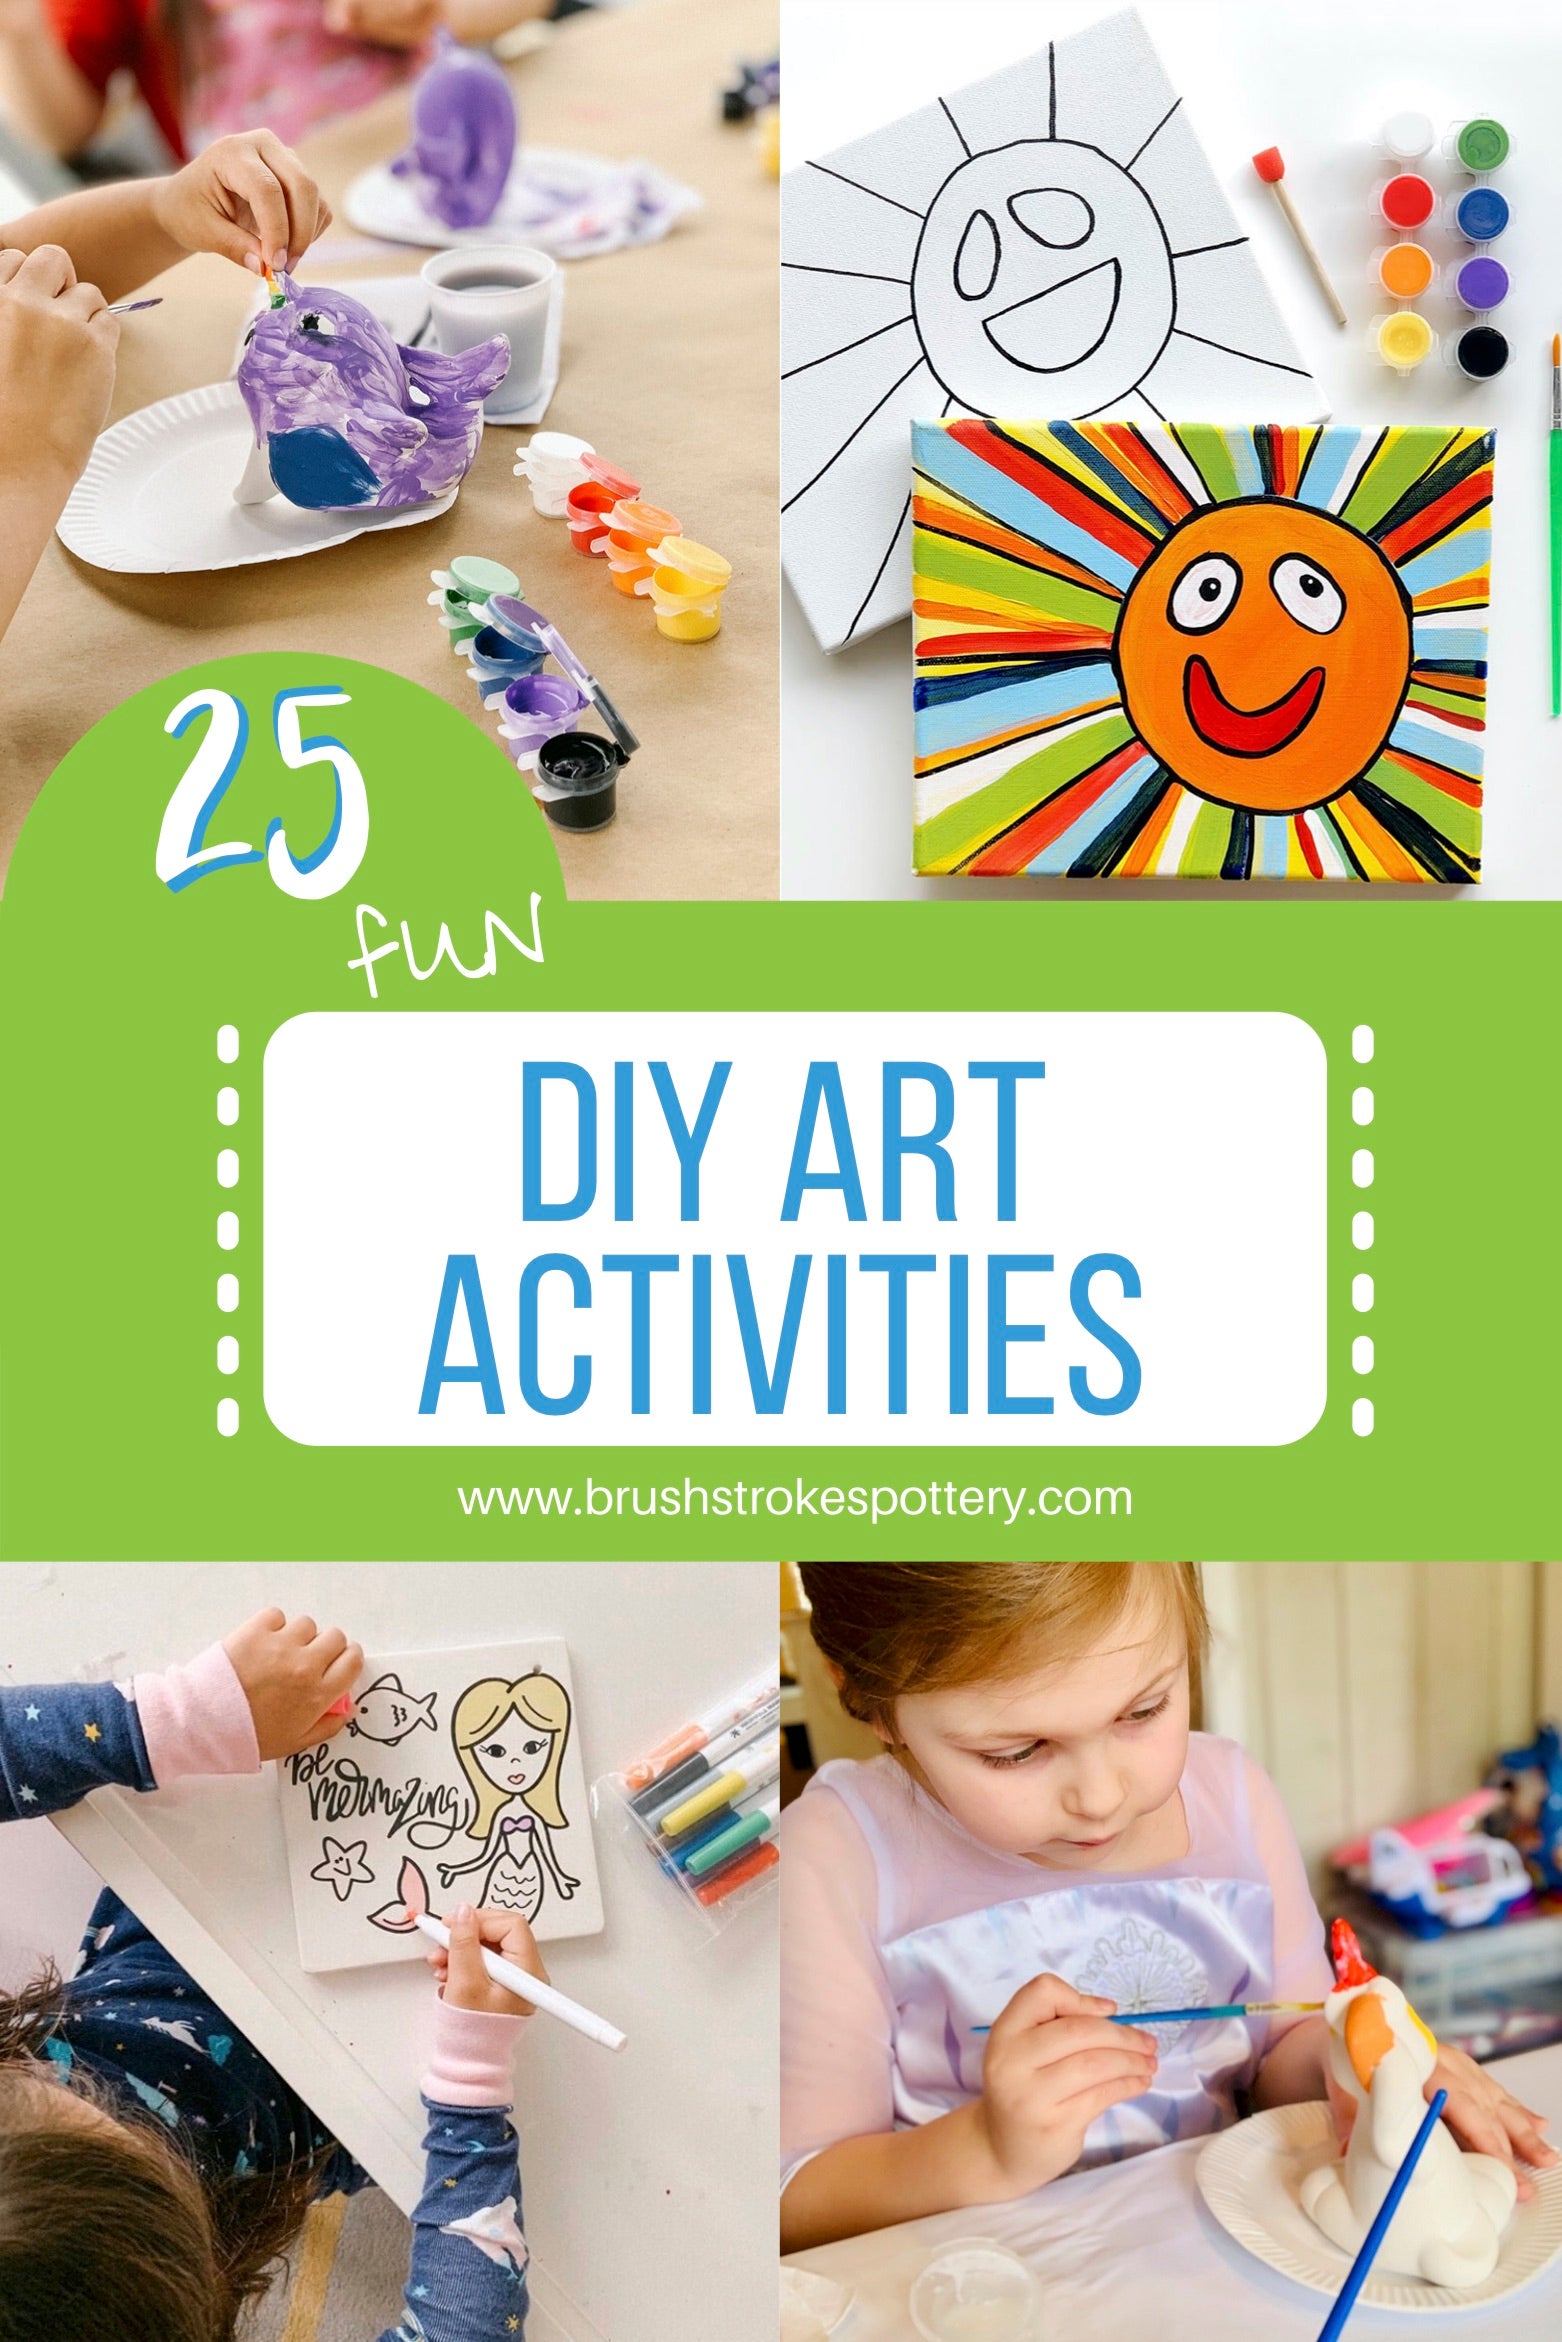 DIY Indoor Art Activities for Kids